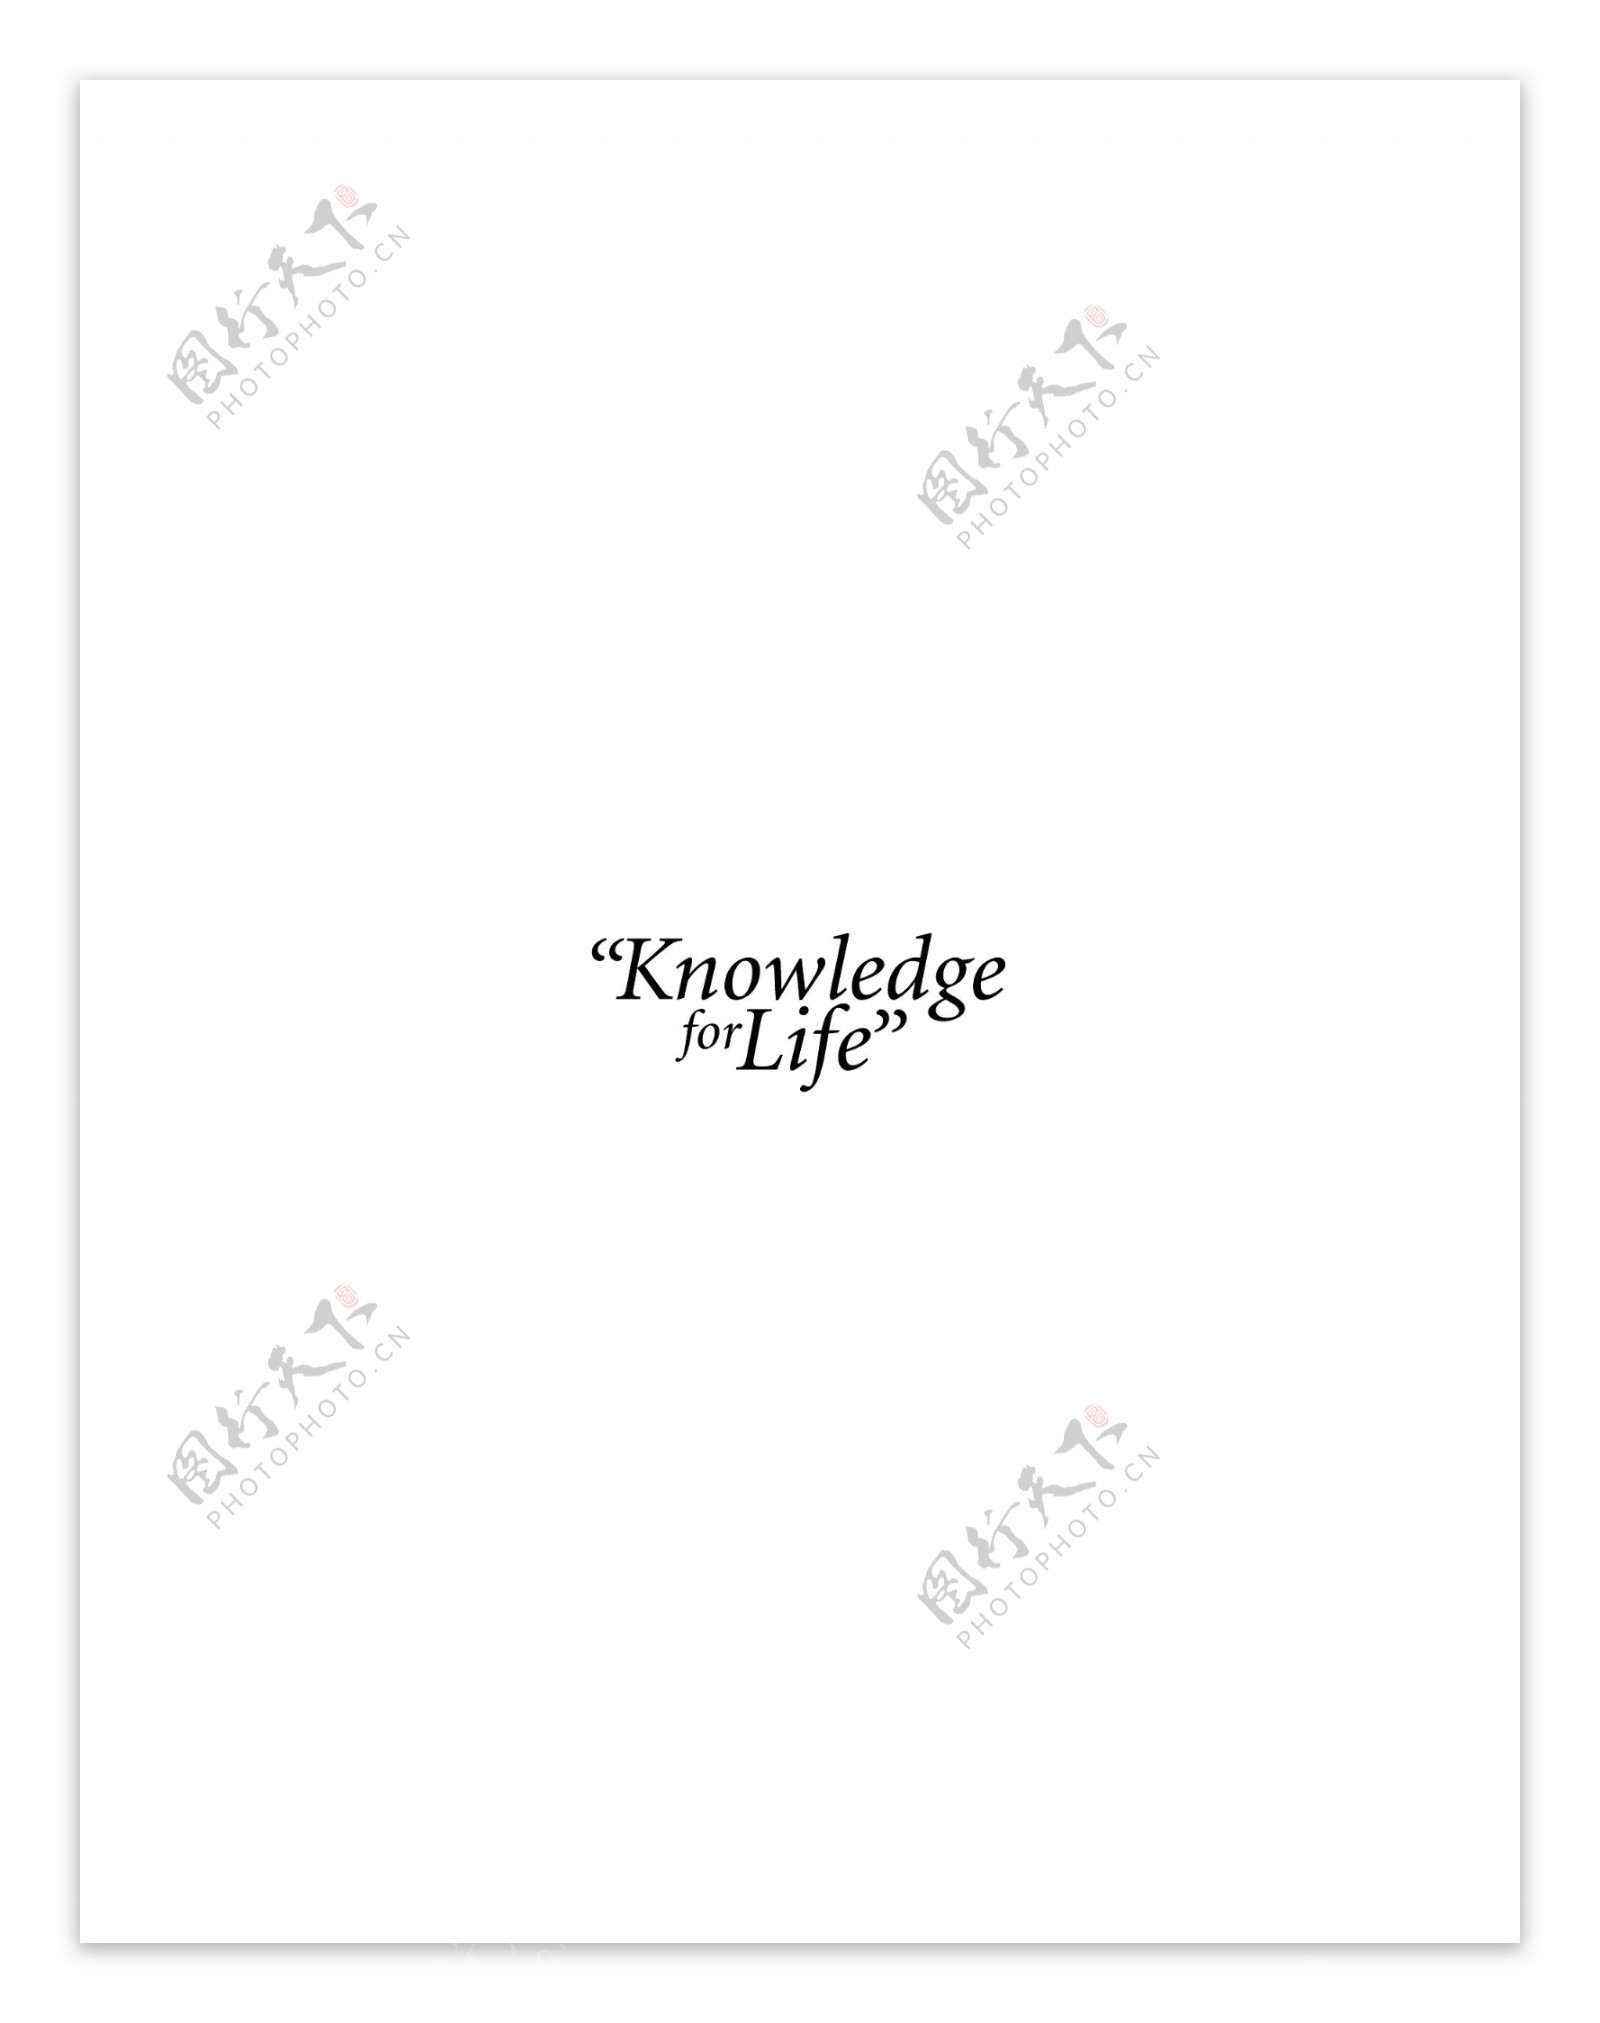 KnowledgeforLifelogo设计欣赏KnowledgeforLife高等学府标志下载标志设计欣赏